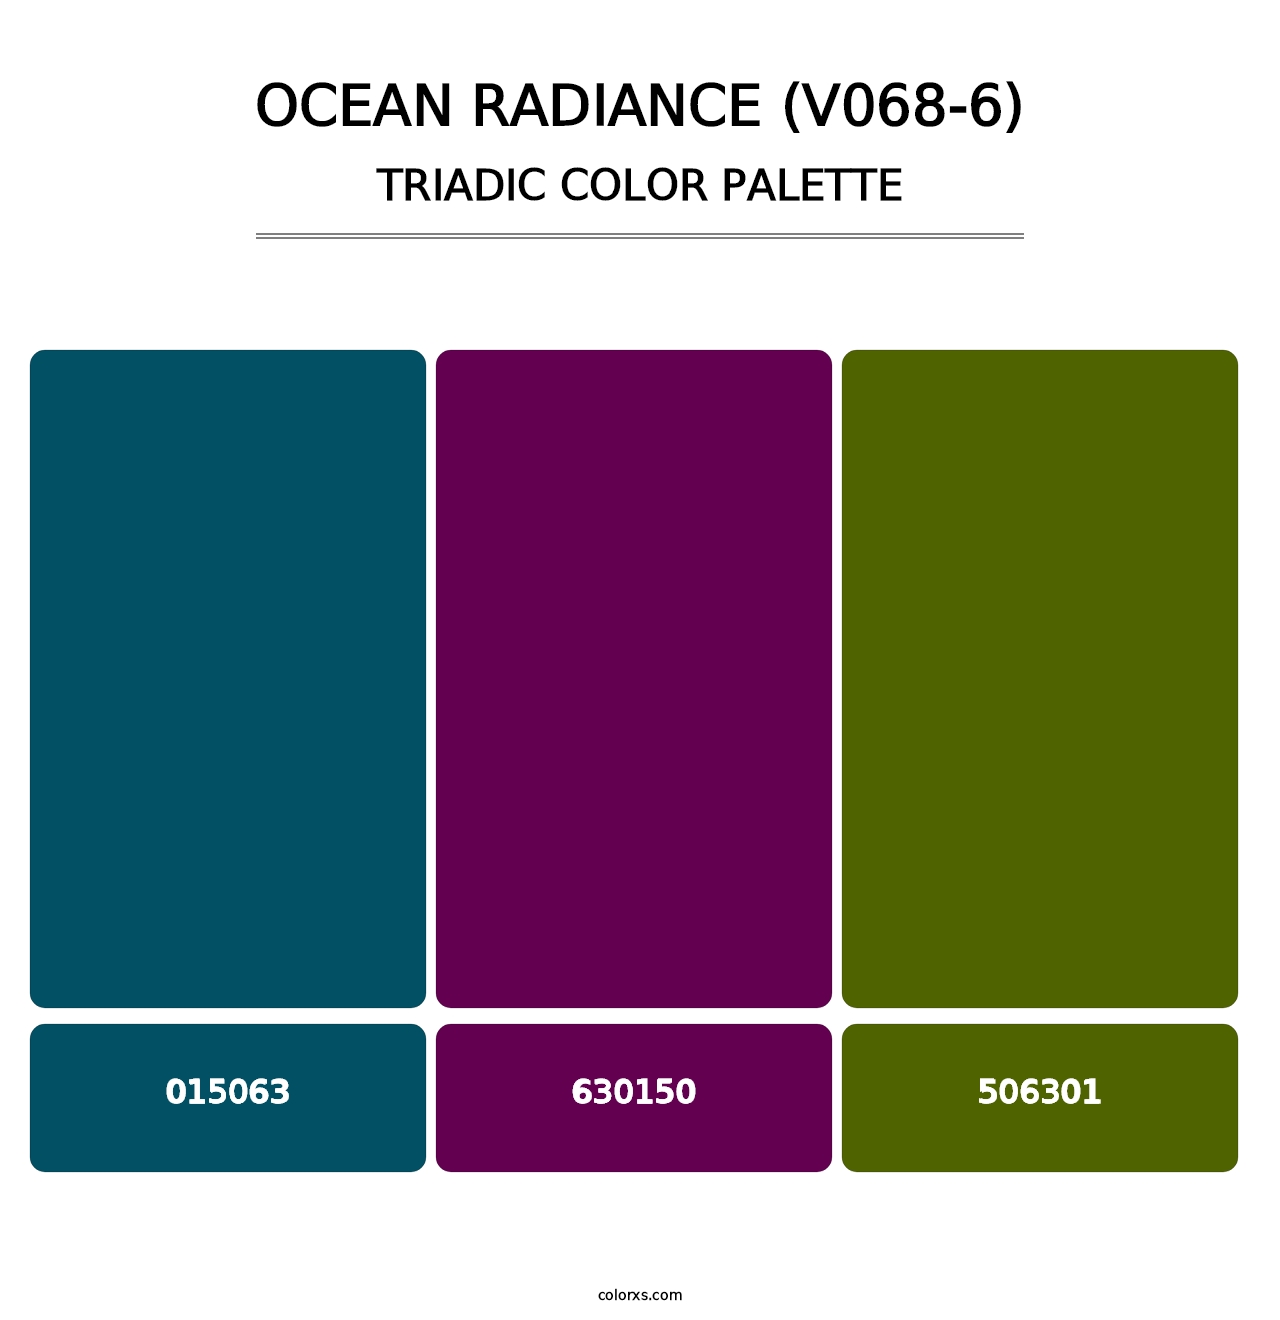 Ocean Radiance (V068-6) - Triadic Color Palette